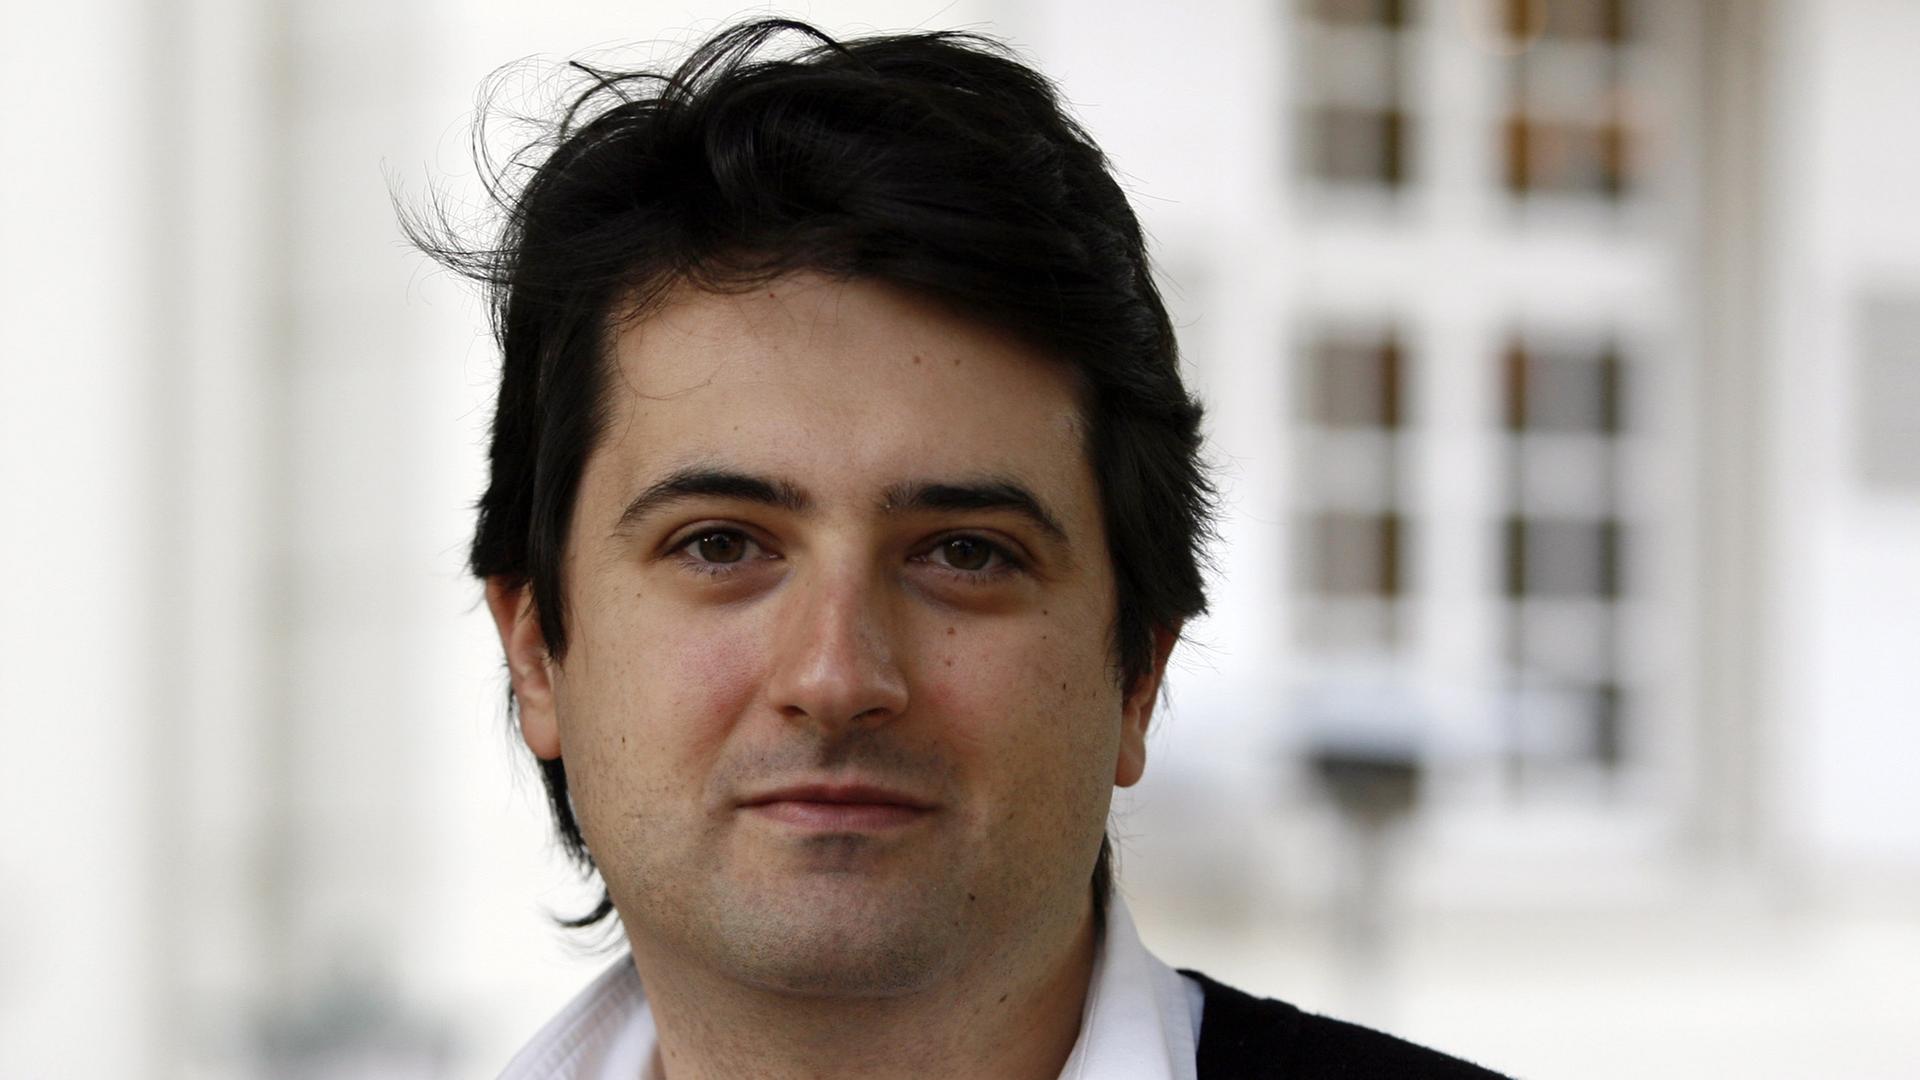 Seit Sommer 2010 Leiter des Pariser Konservatoriums: Bruno Mantovani